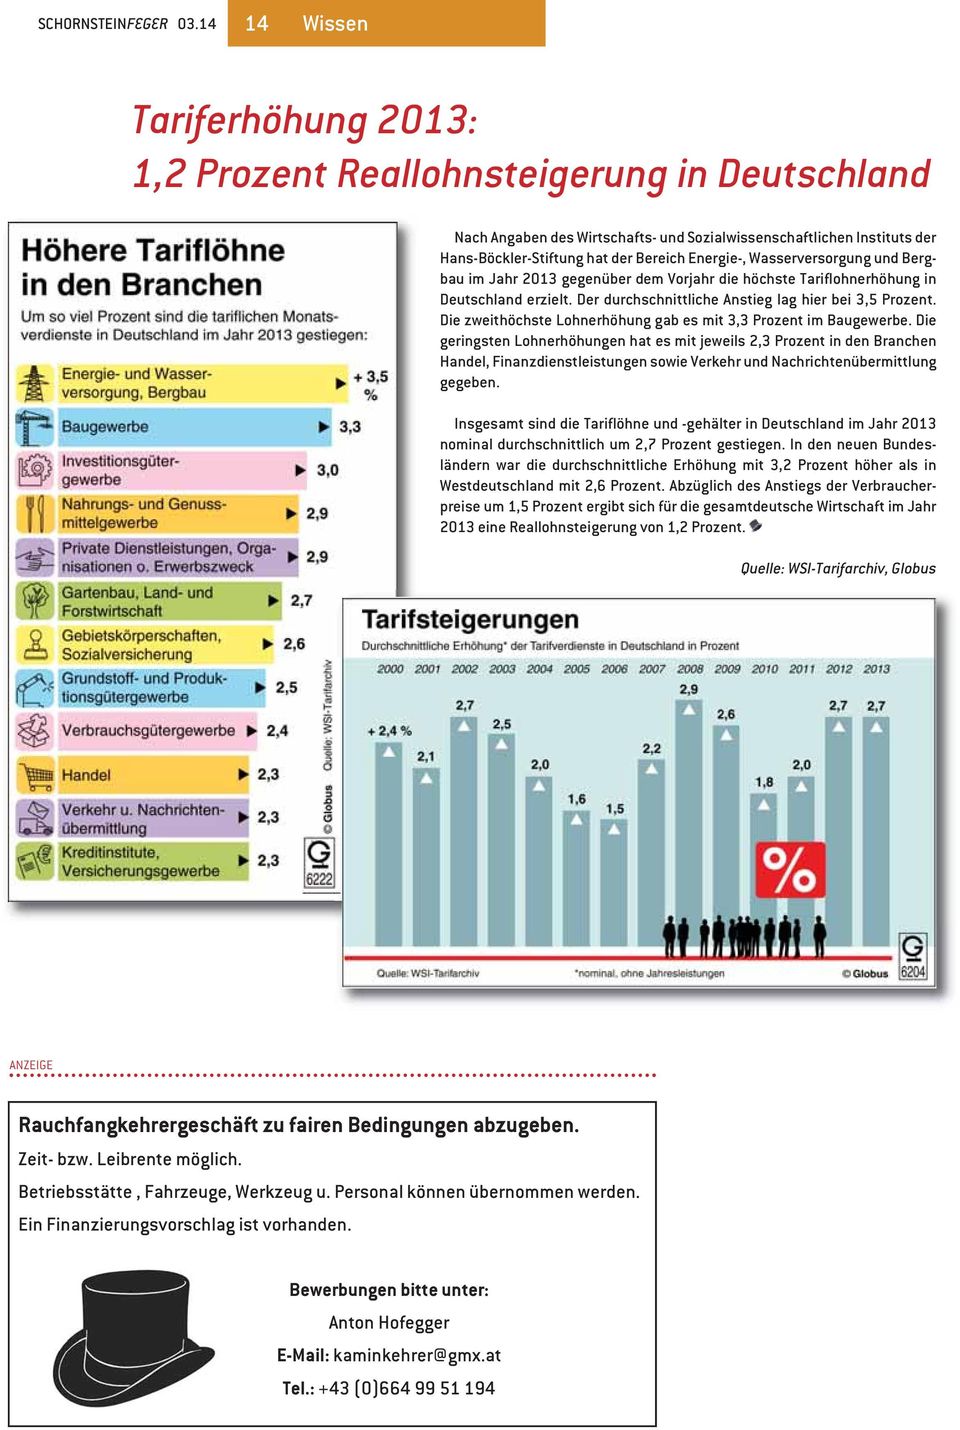 Wasserversorgung und Bergbau im Jahr 2013 gegenüber dem Vorjahr die höchste Tariflohnerhöhung in Deutschland erzielt. Der durchschnittliche Anstieg lag hier bei 3,5 Prozent.